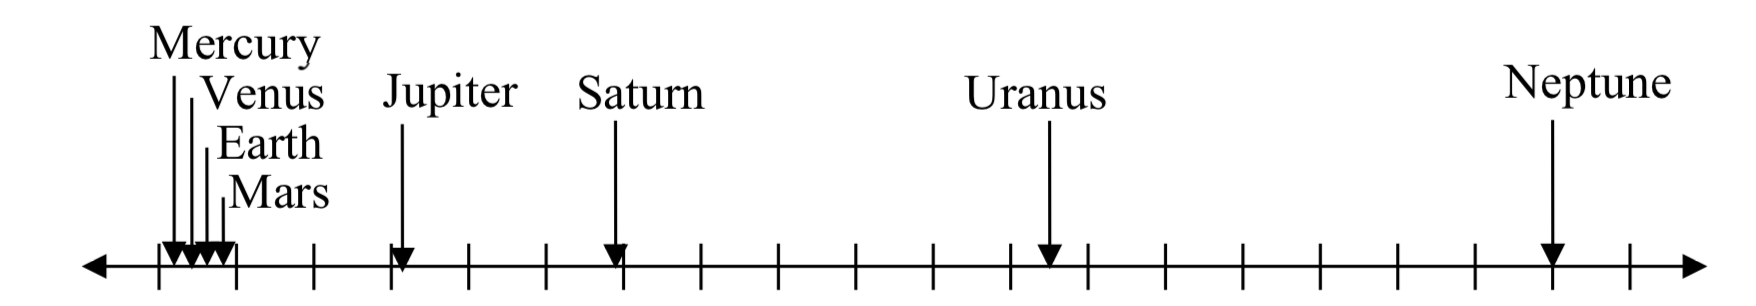 Una línea numérica etiquetada distancia de 0 a 4500 con marcas de graduación igualmente espaciadas cada 250. Hay flechas que apuntan a ubicaciones para cada planeta. Hay cuatro flechas entre 0 y 250 para Mercurio Venus Tierra y Marte, luego una flecha en 779 para Júpiter, en 1430 para Saturno, en 2880 para Urano, y en 4500 para Neptuno.